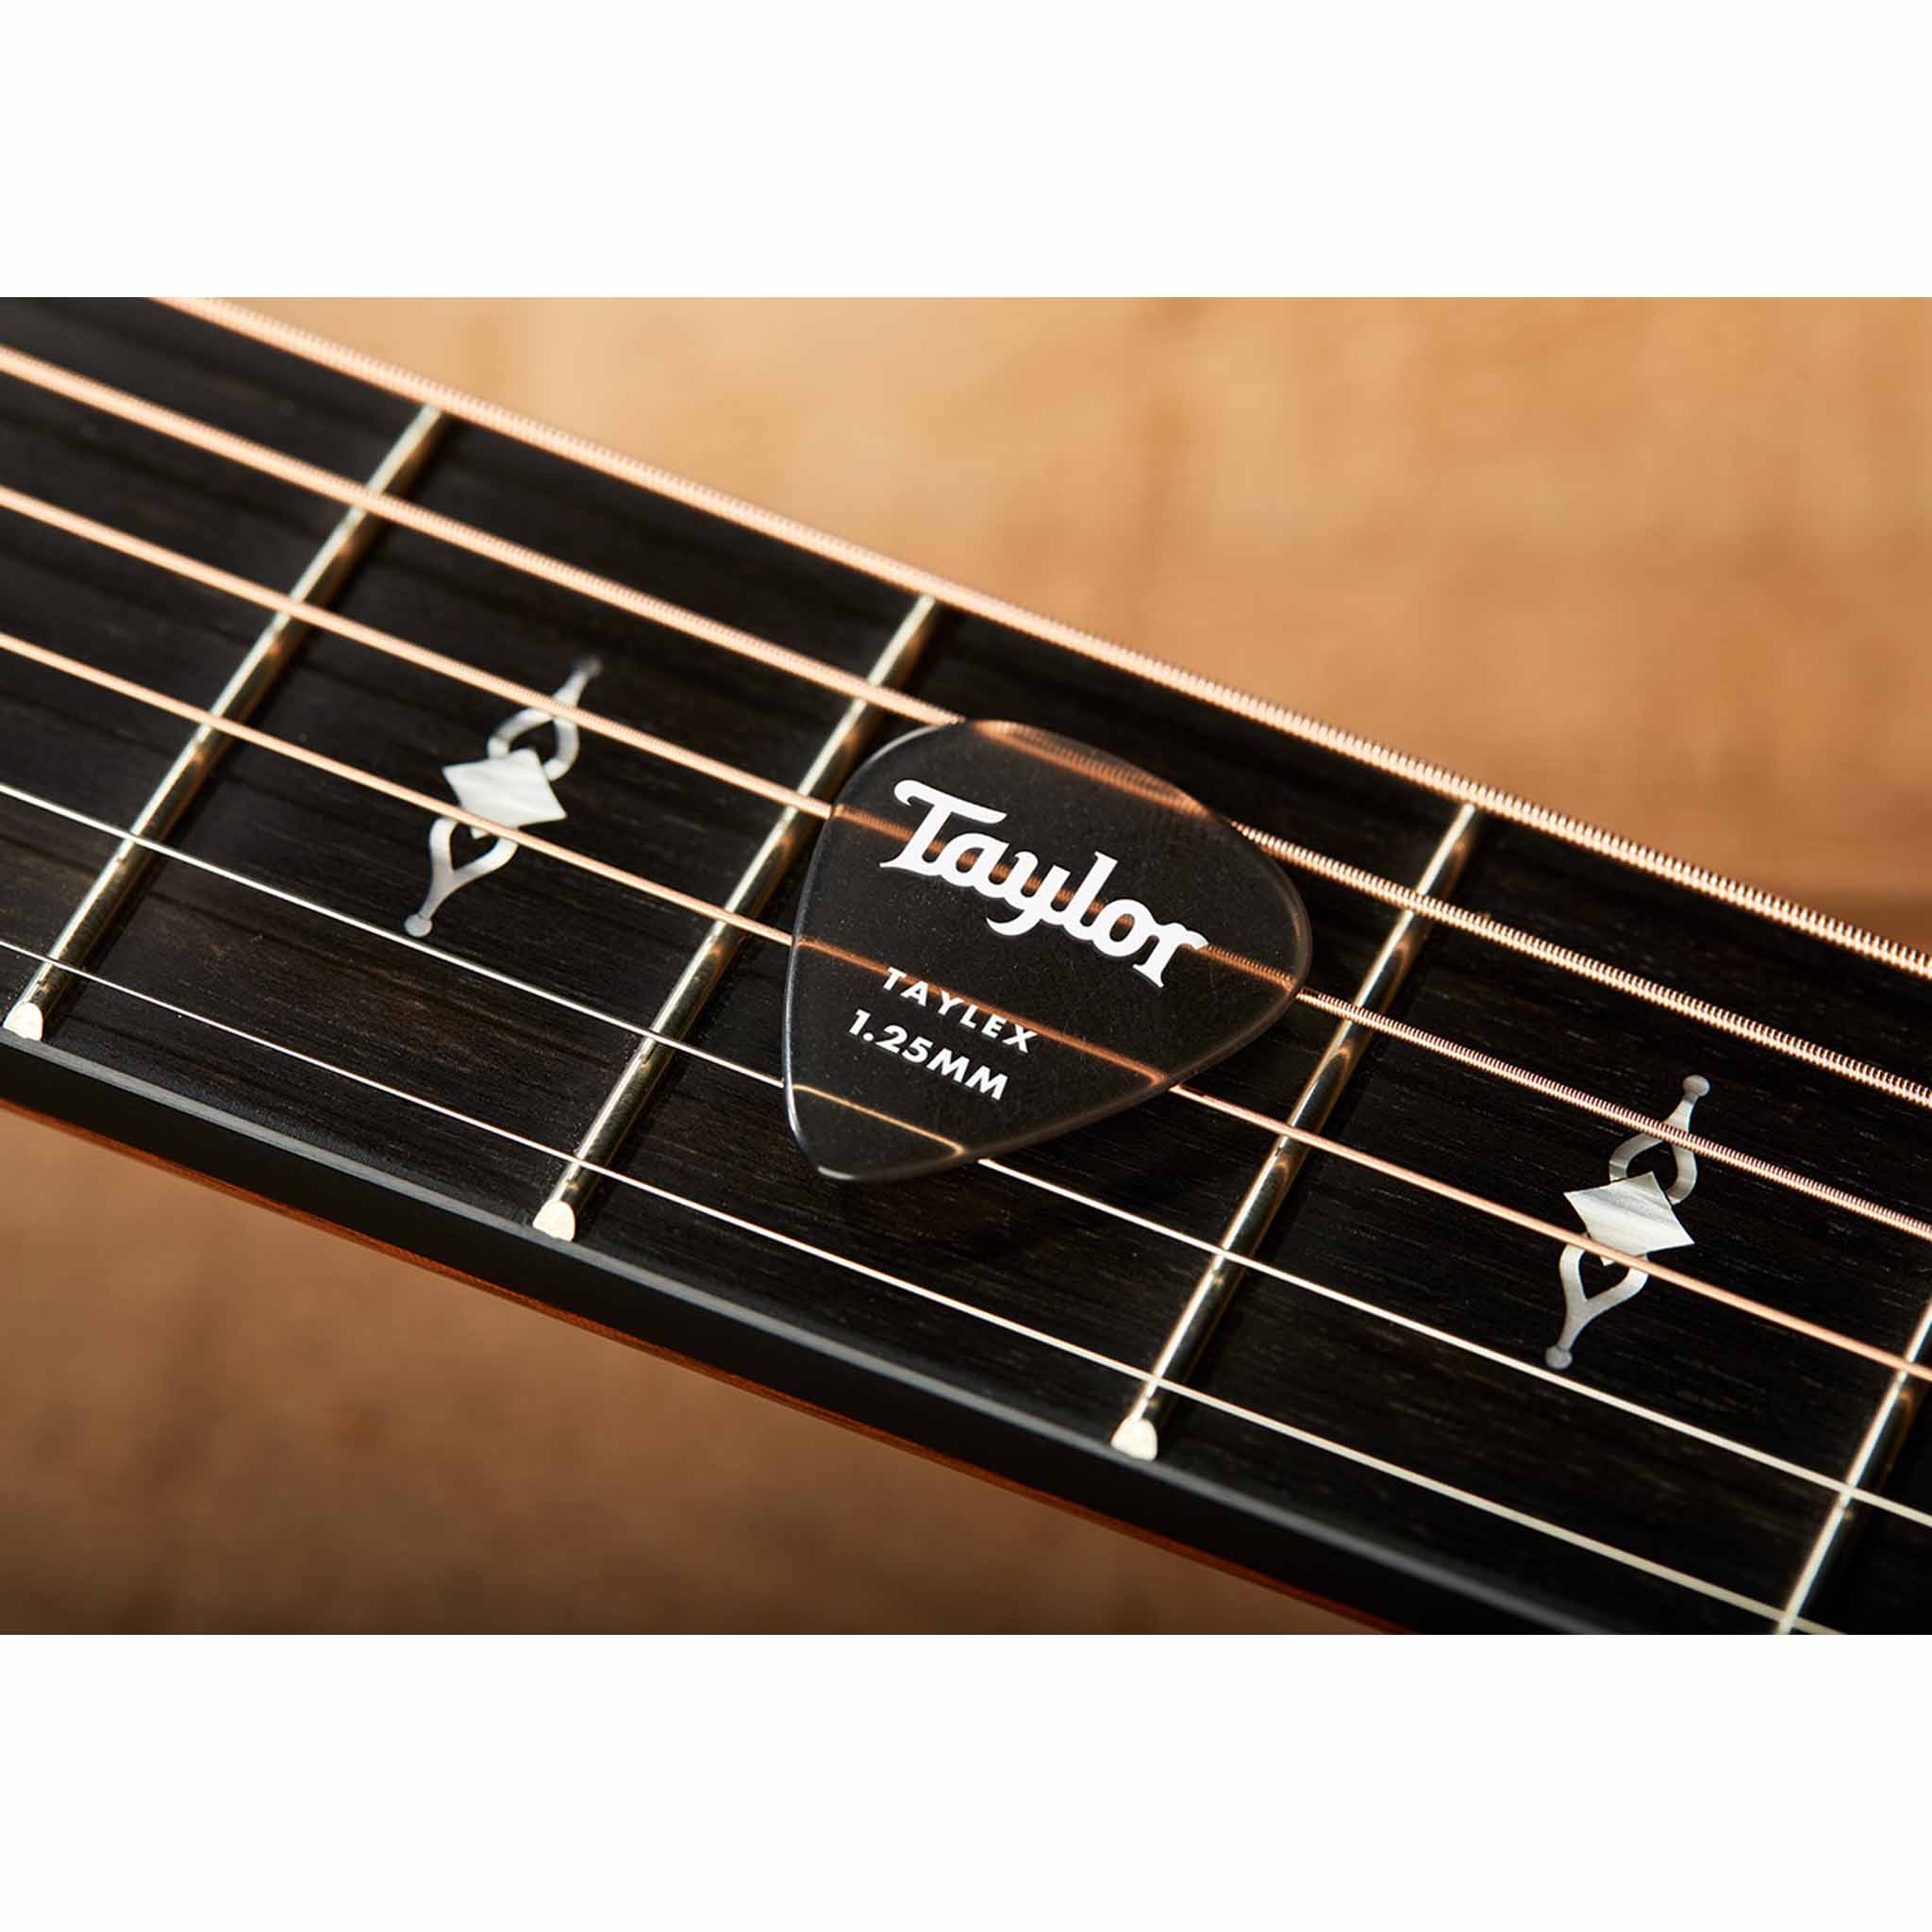 Taylor Premium 351 Taylex Guitar Picks - 1.25mm, 6-Pack